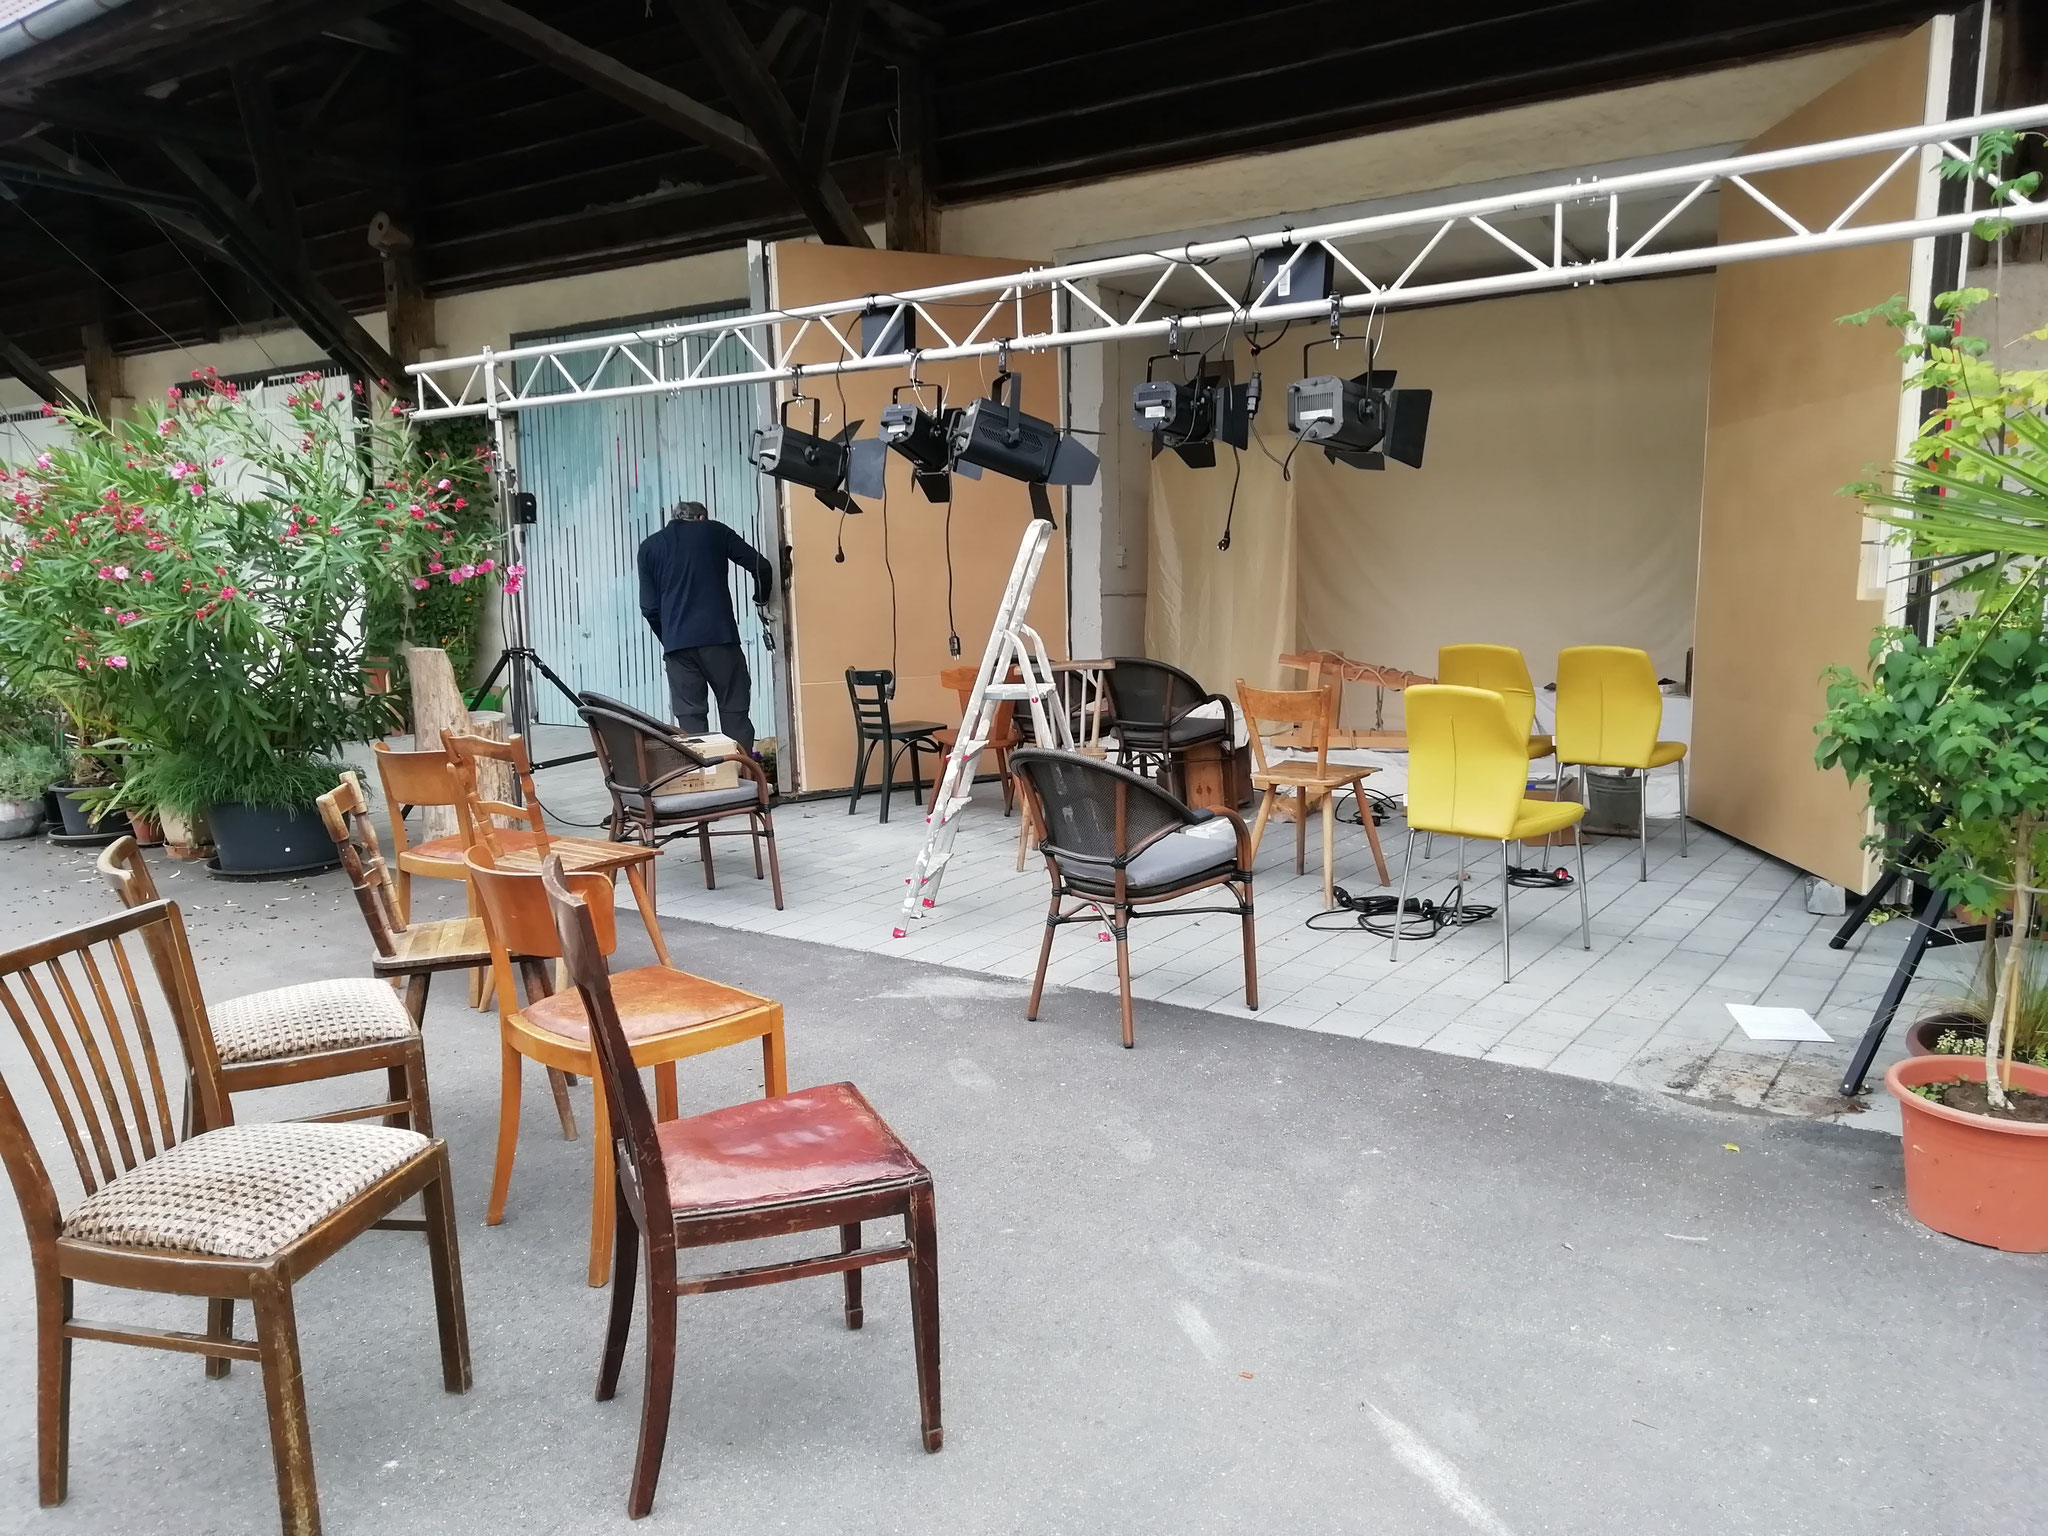 Zwischendurch spielen wir Camille Claudel vor dem unfertig ausgebauten Atelier als Open Air